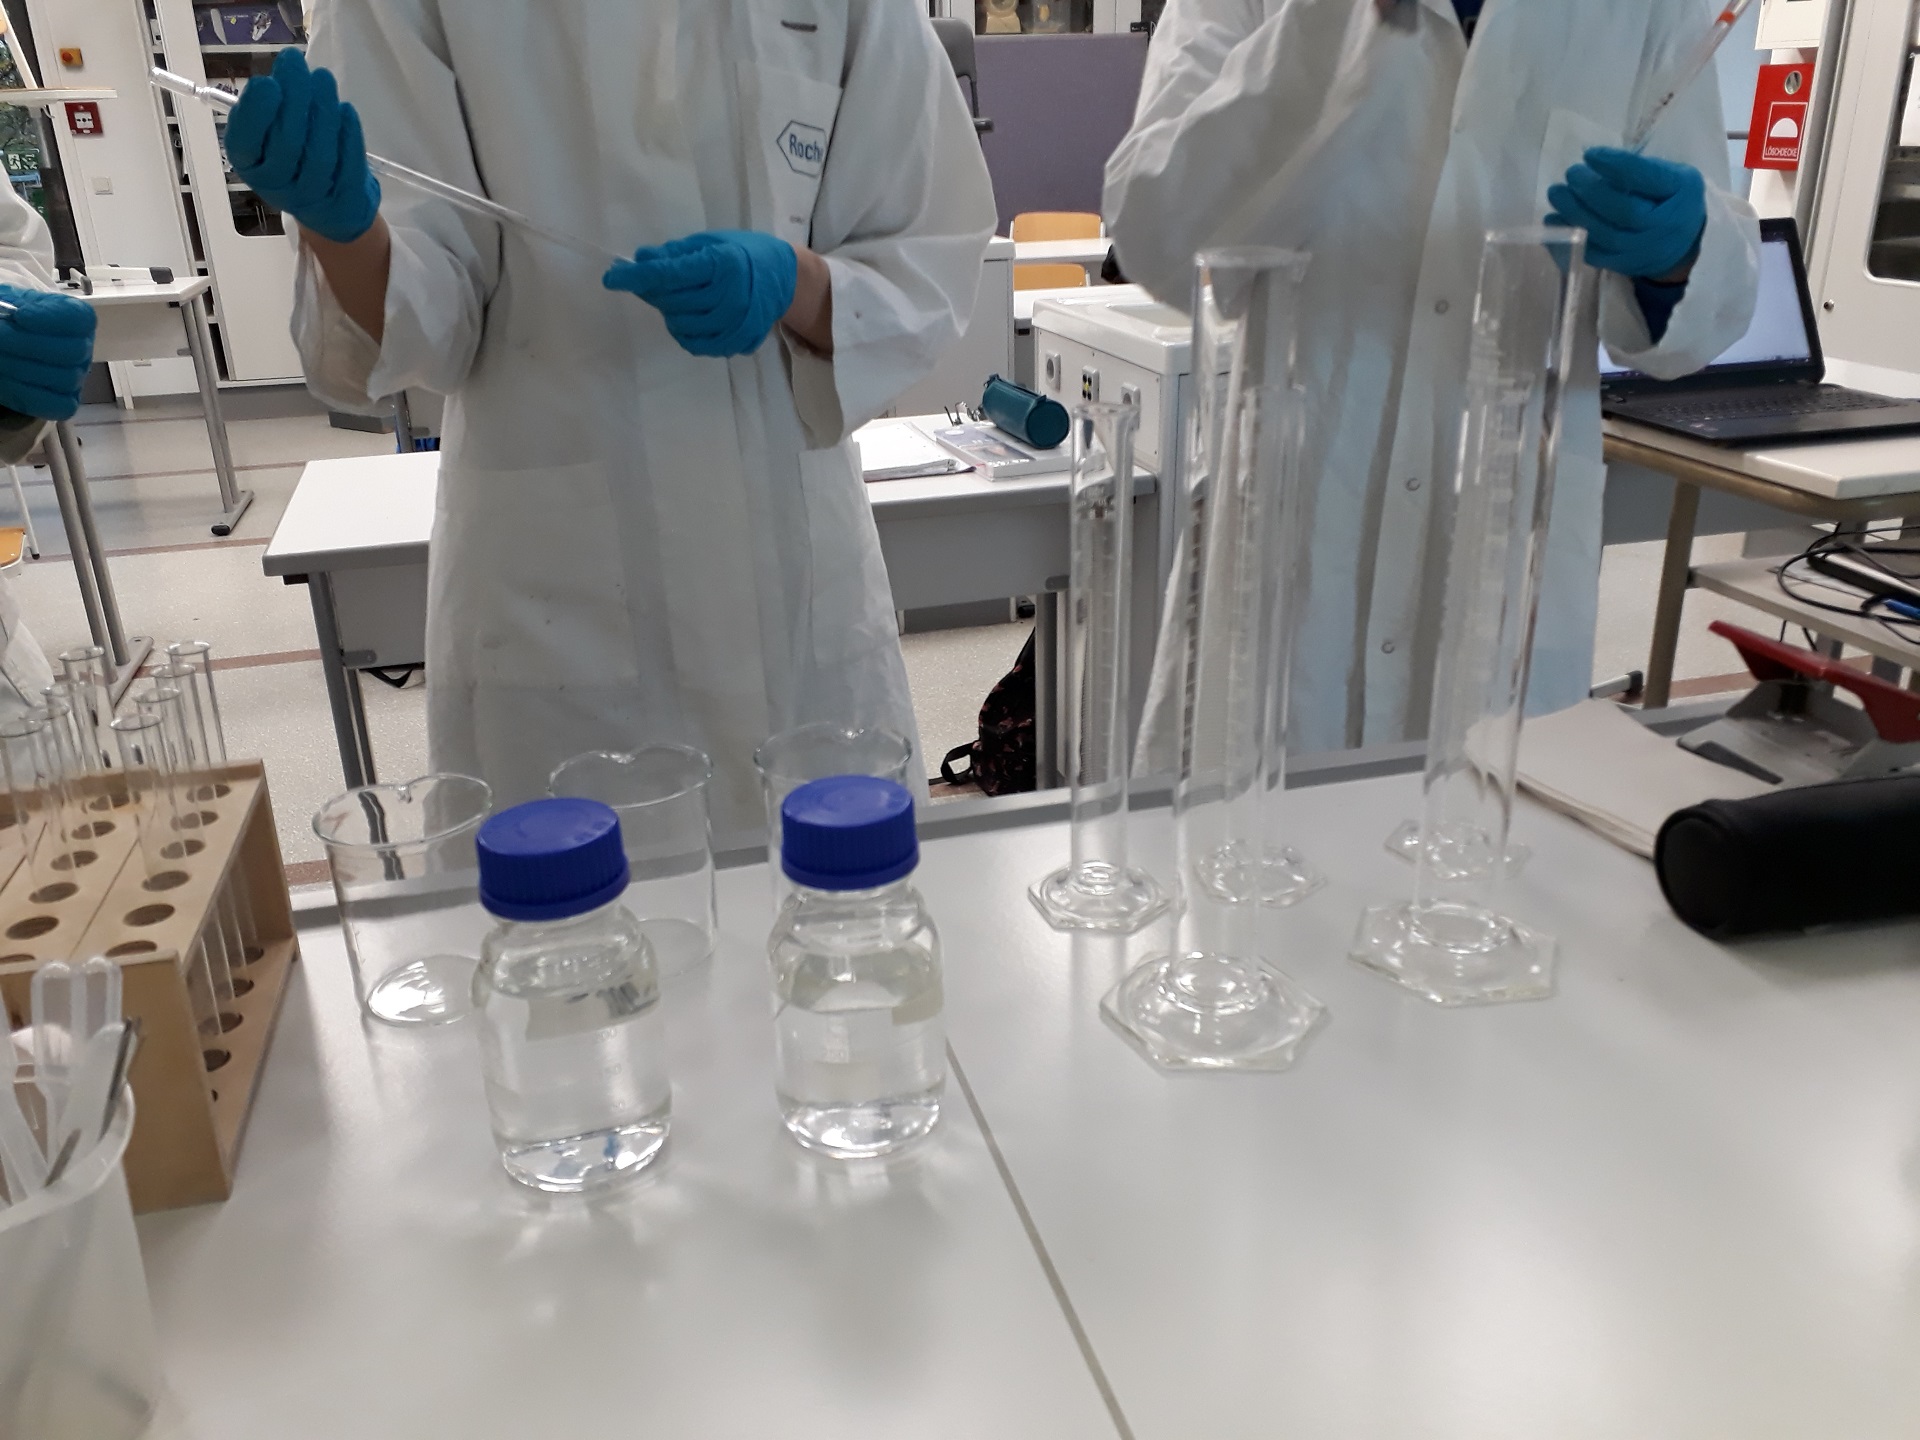 Wissenschaftliches Überraschungspaket bereichert den Chemieunterricht mit neuem Labormaterial (Foto: Dr. G. Hoffmann)